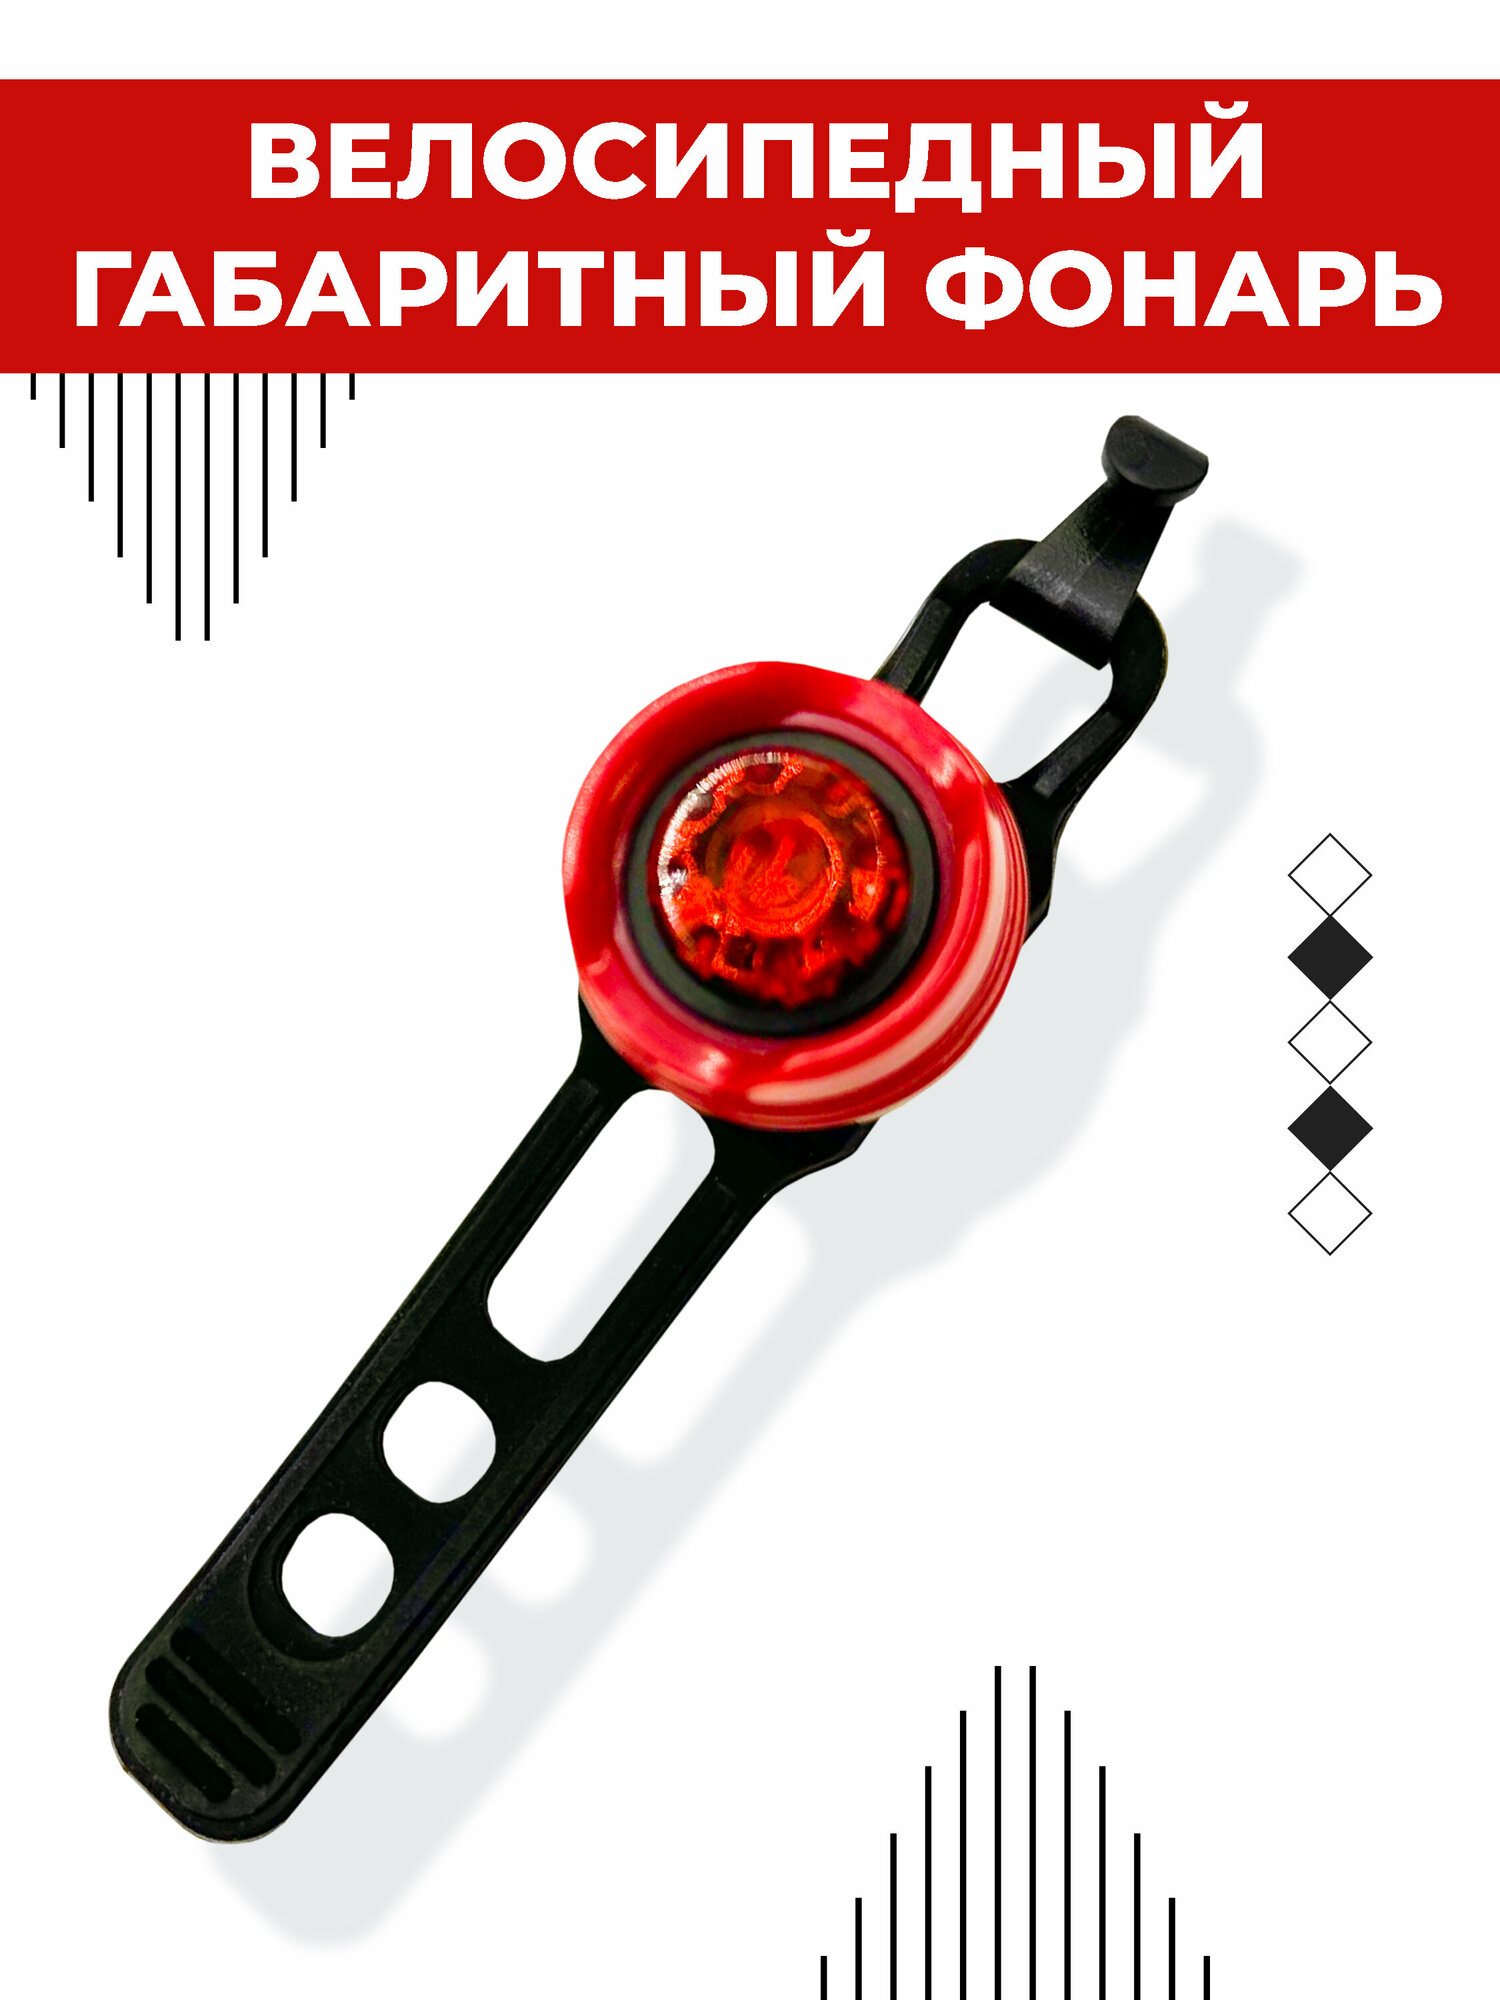 Велосипедный габаритный фонарь Boomshakalaka питание от батареек (CR2032 2 шт.) светодиодный задний